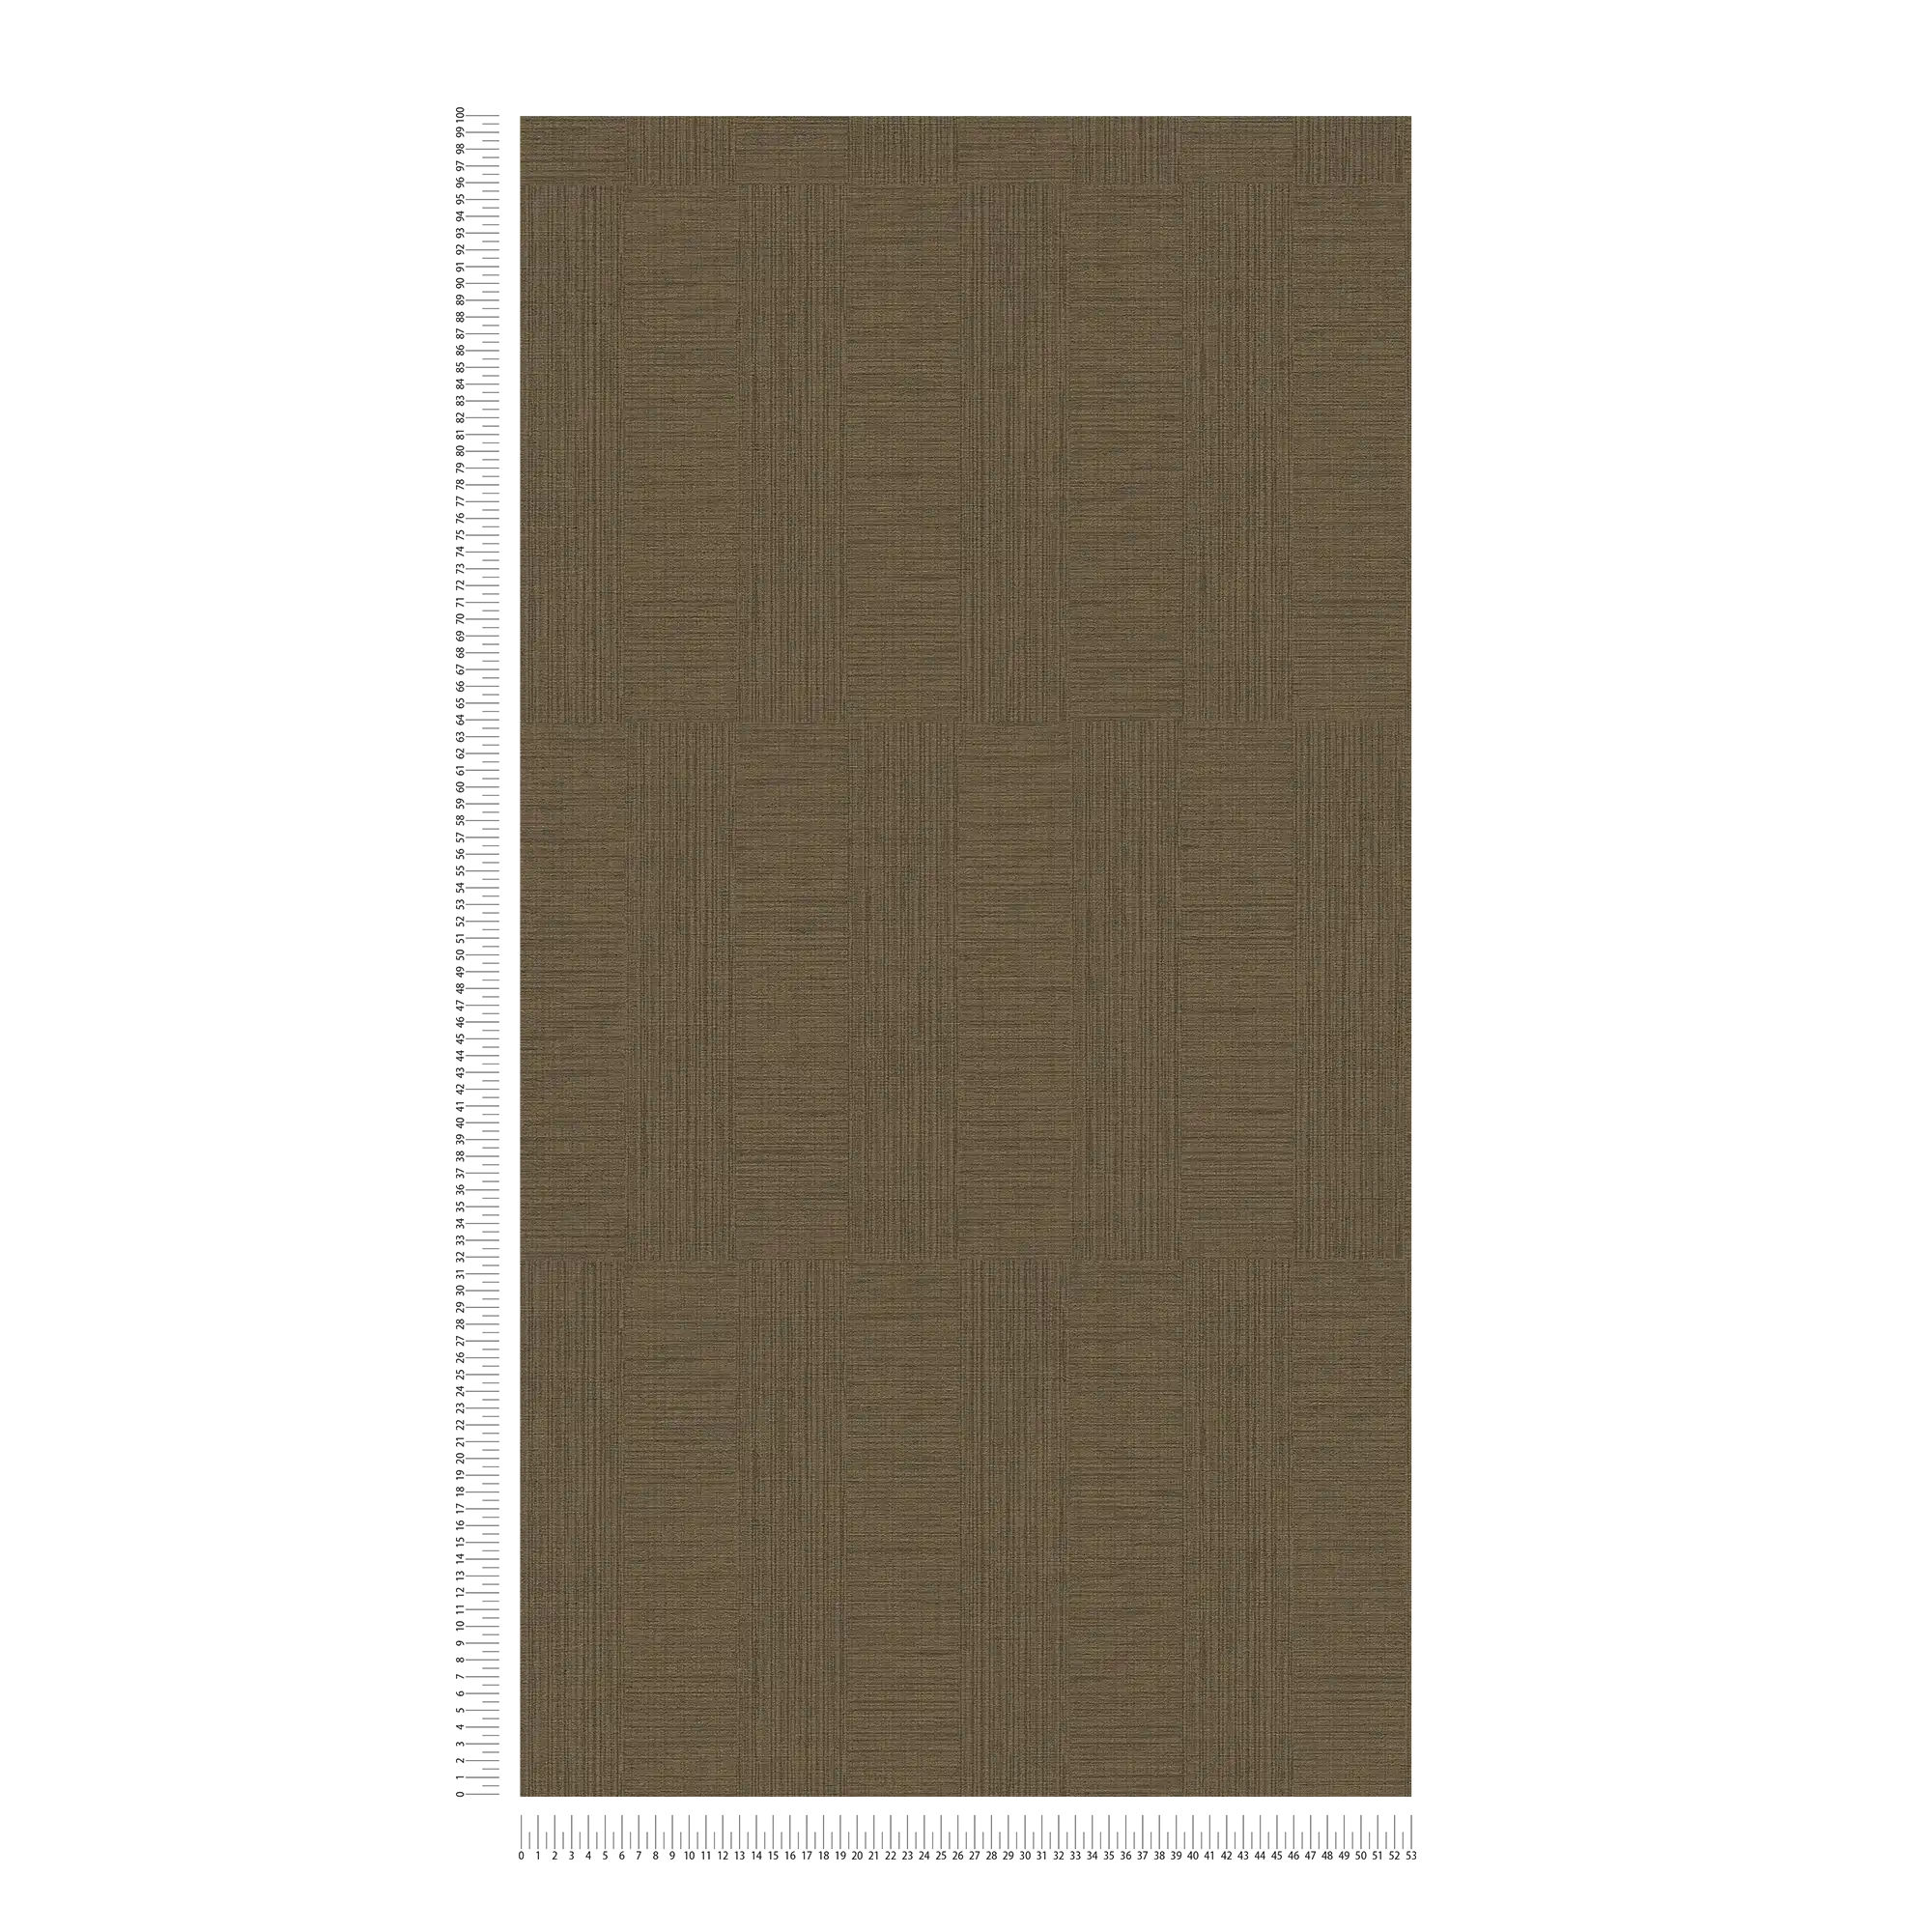             Papier peint chiné avec motif rectangulaire style rétro - marron
        